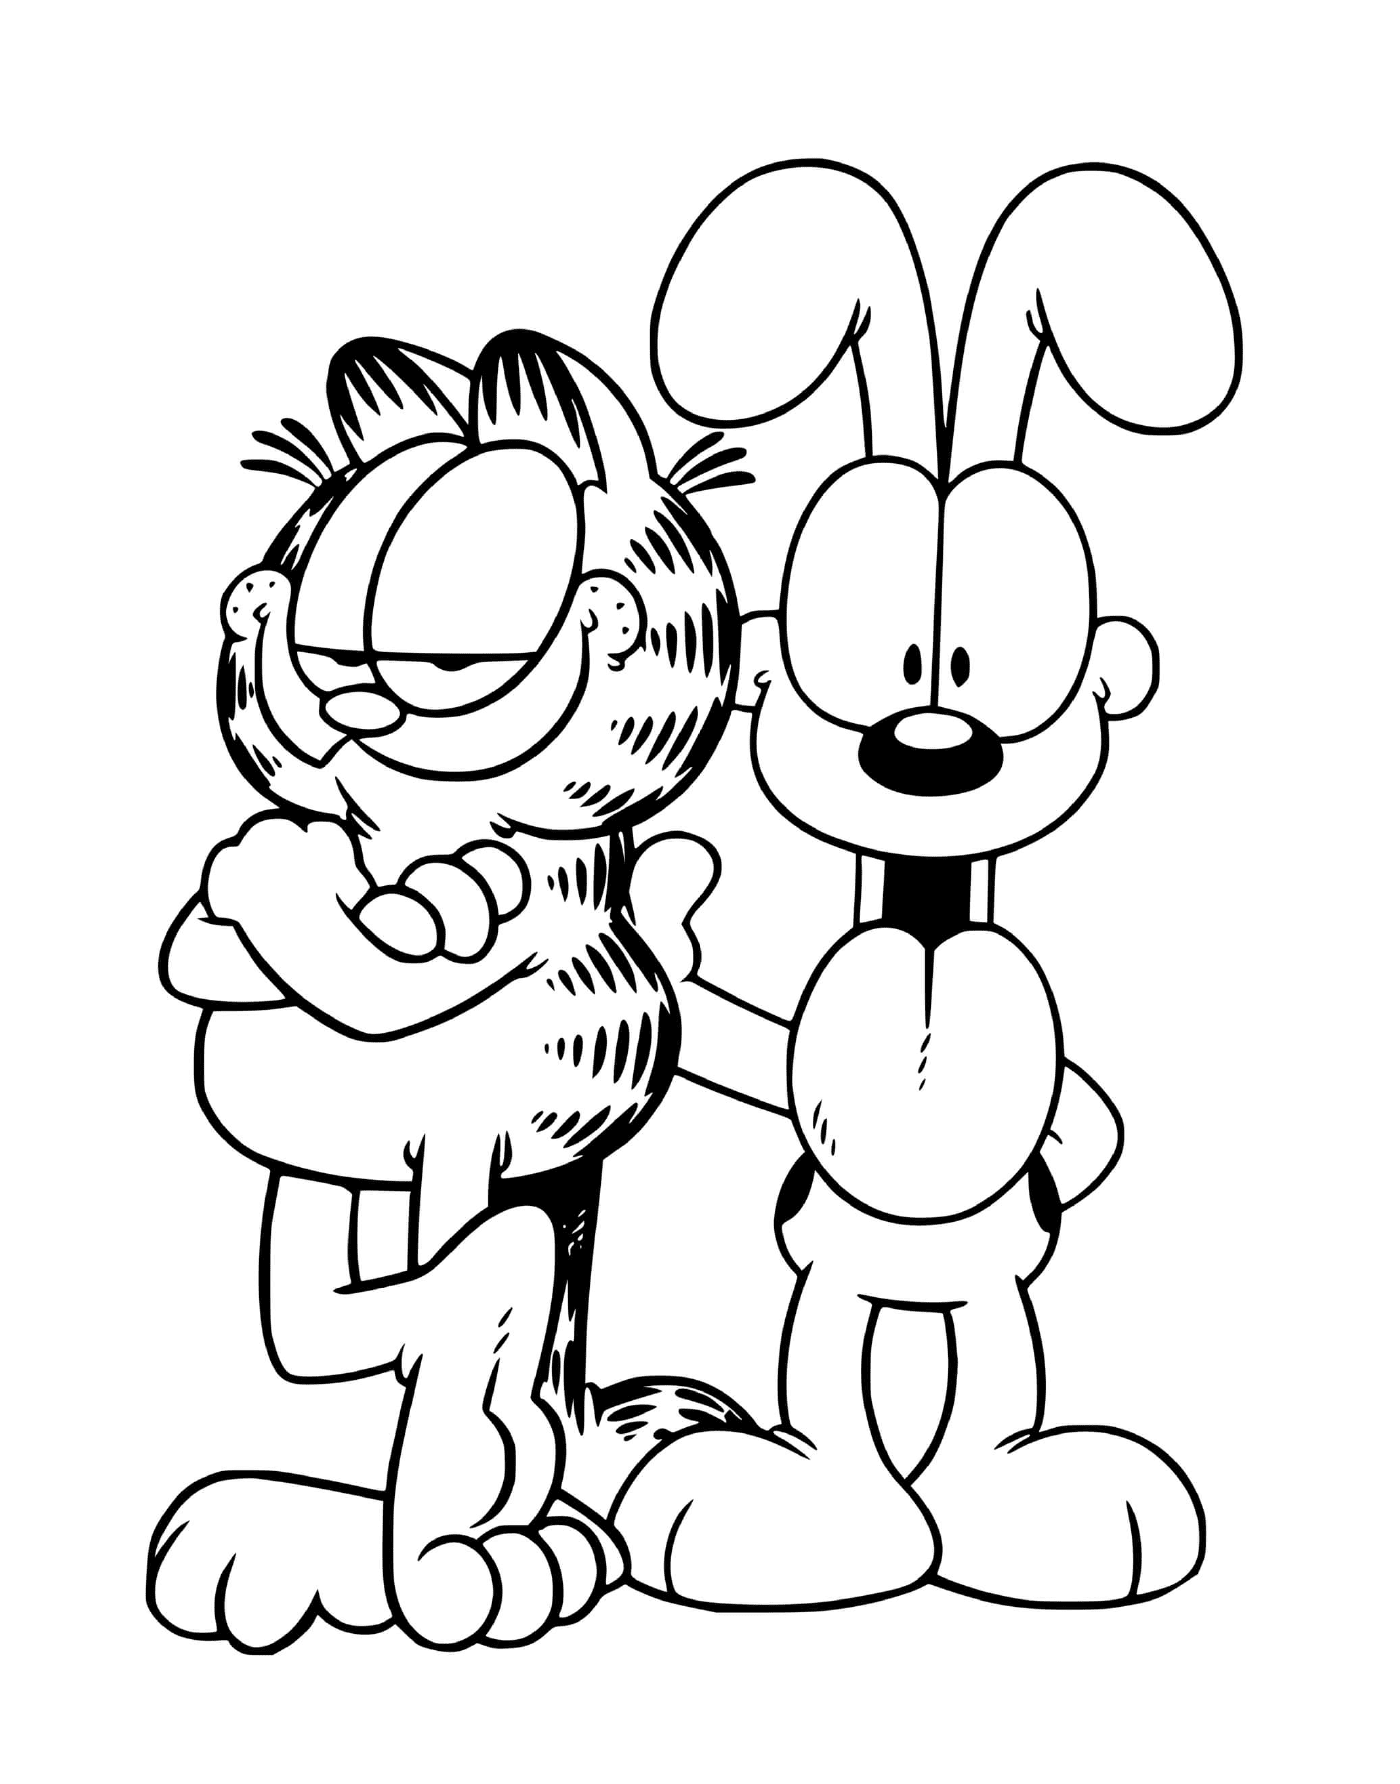  Garfield and Odie, best friends 